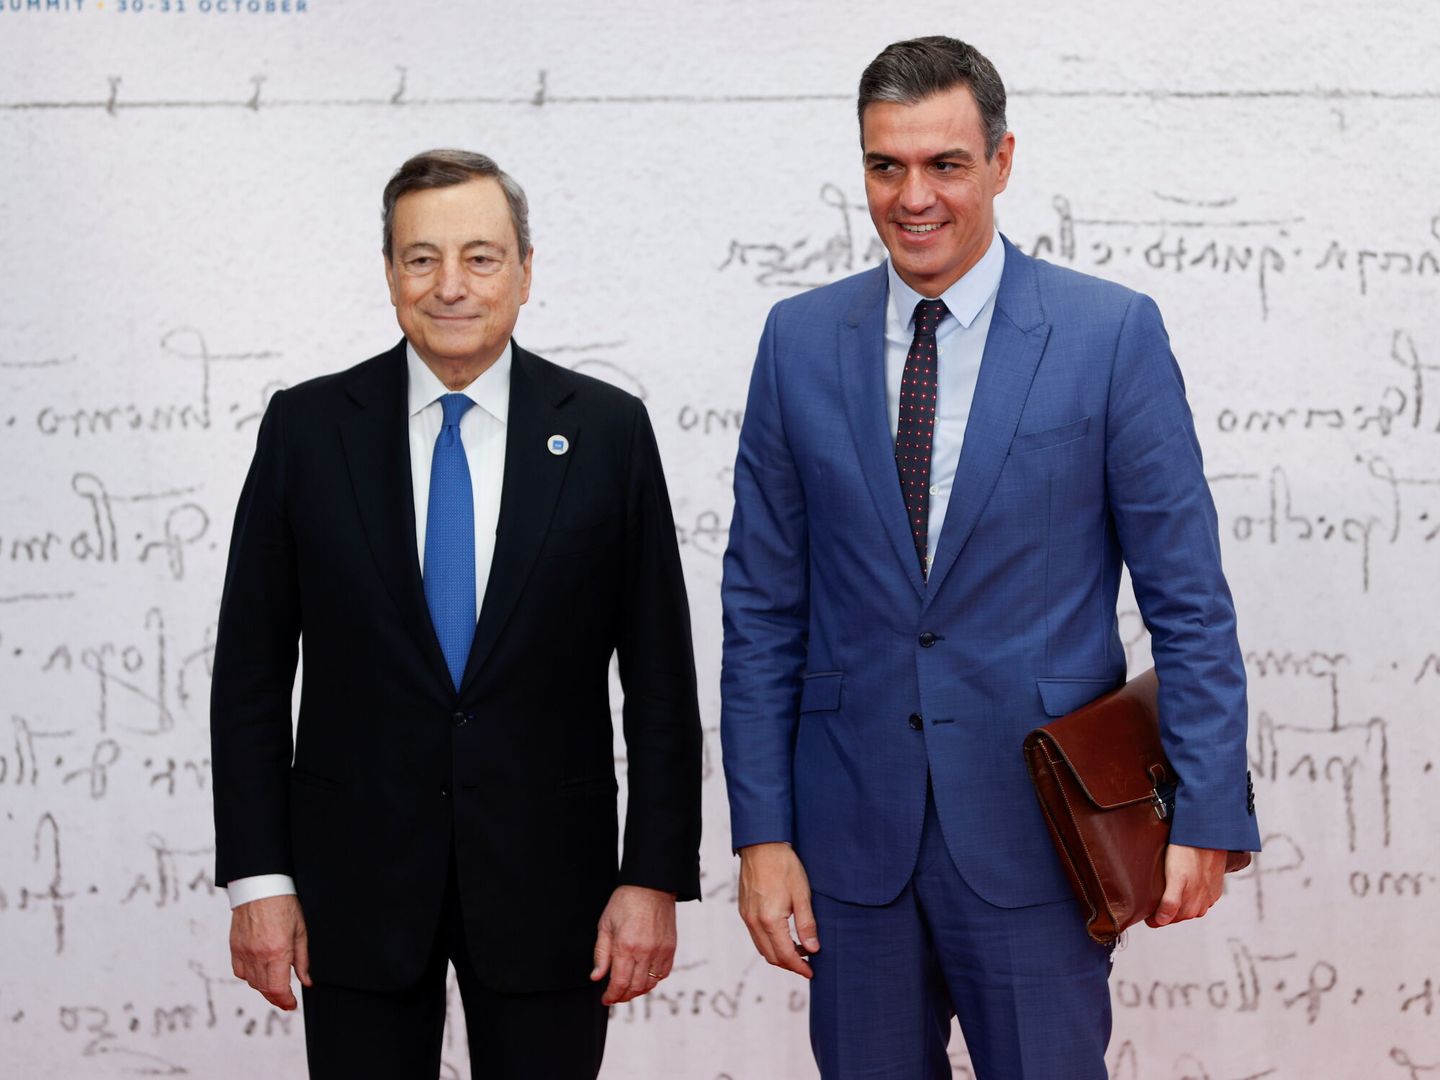 El primer ministro italiano, Mario Draghi, posa con el presidente Sánchez a su llegada al G20. (Reuters)